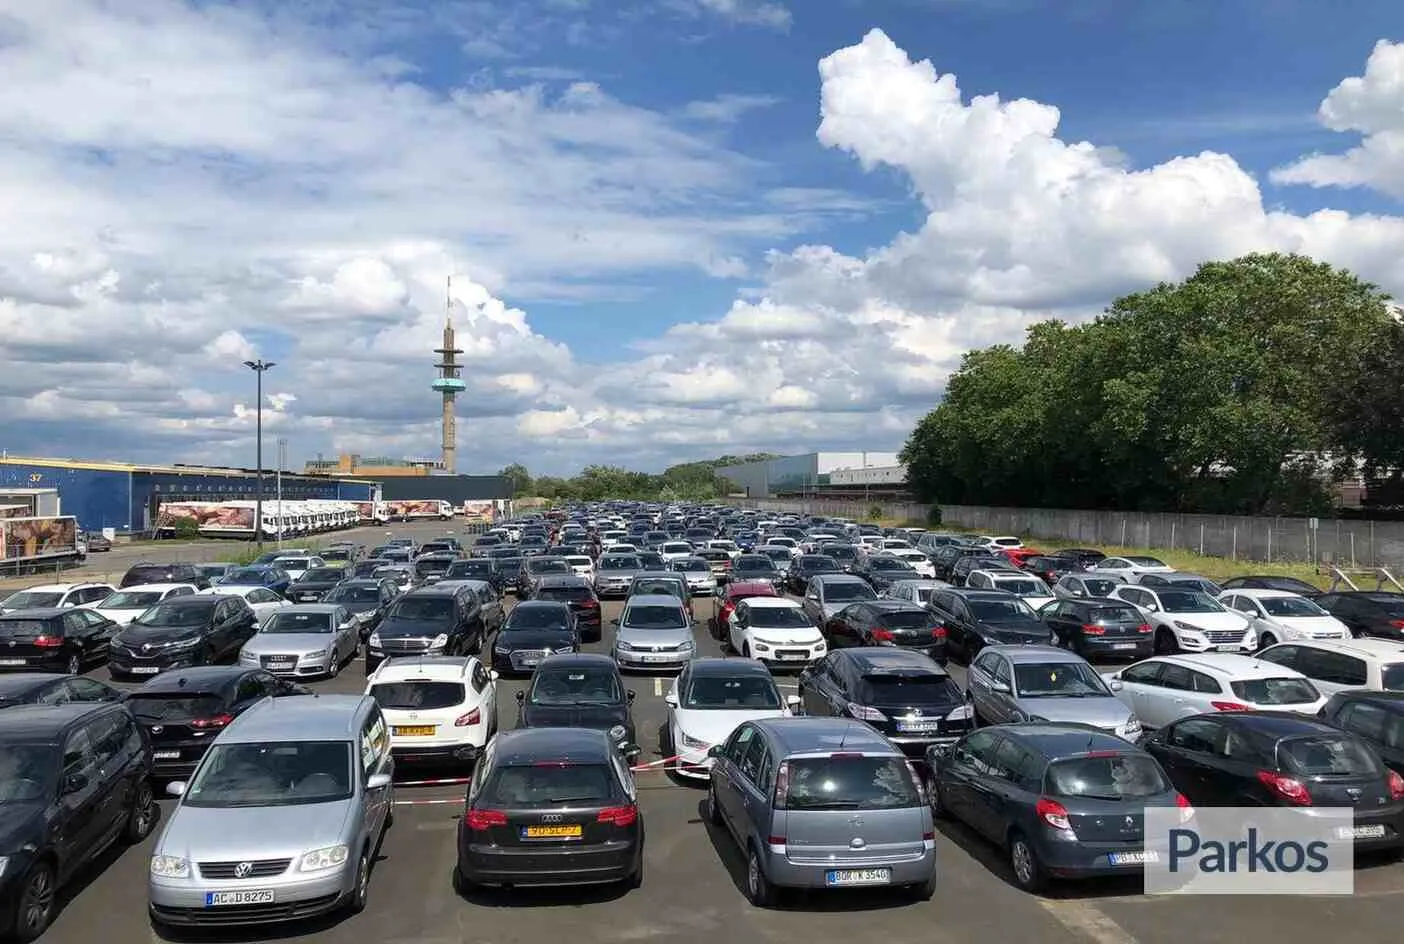 Parking Airea Köln - Cologne Airport Parking - picture 1